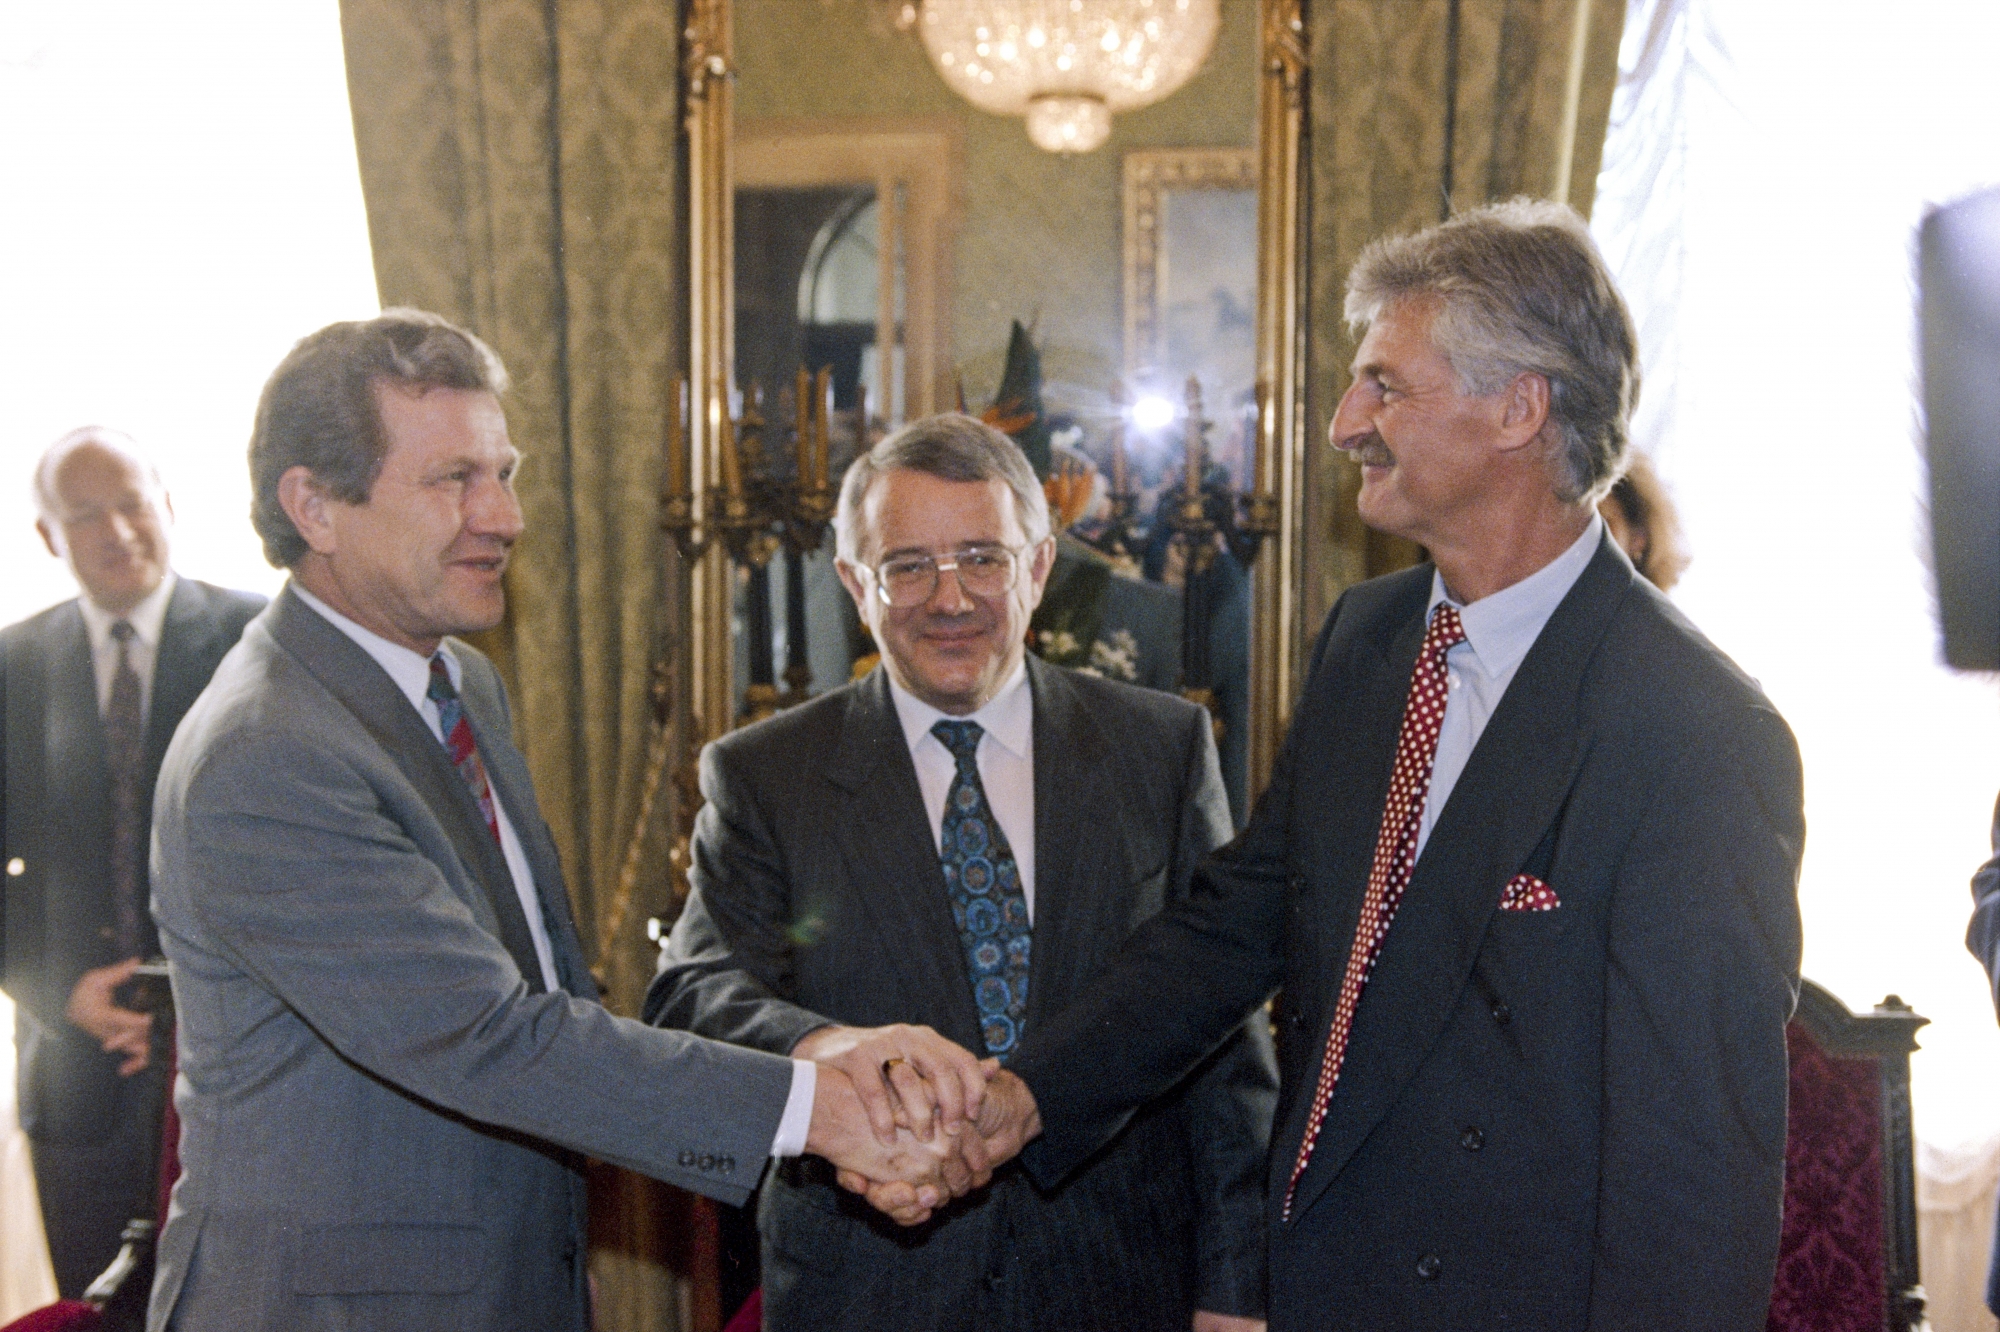 Vendredi 25 mars 1994 au Palais fédéral: le Bernois Hermann Fehr (à gauche) et le Jurassien Jean-Pierre Beuret à l’heure du dialogue. Tout sourire est le conseiller fédéral Arnold Koller.